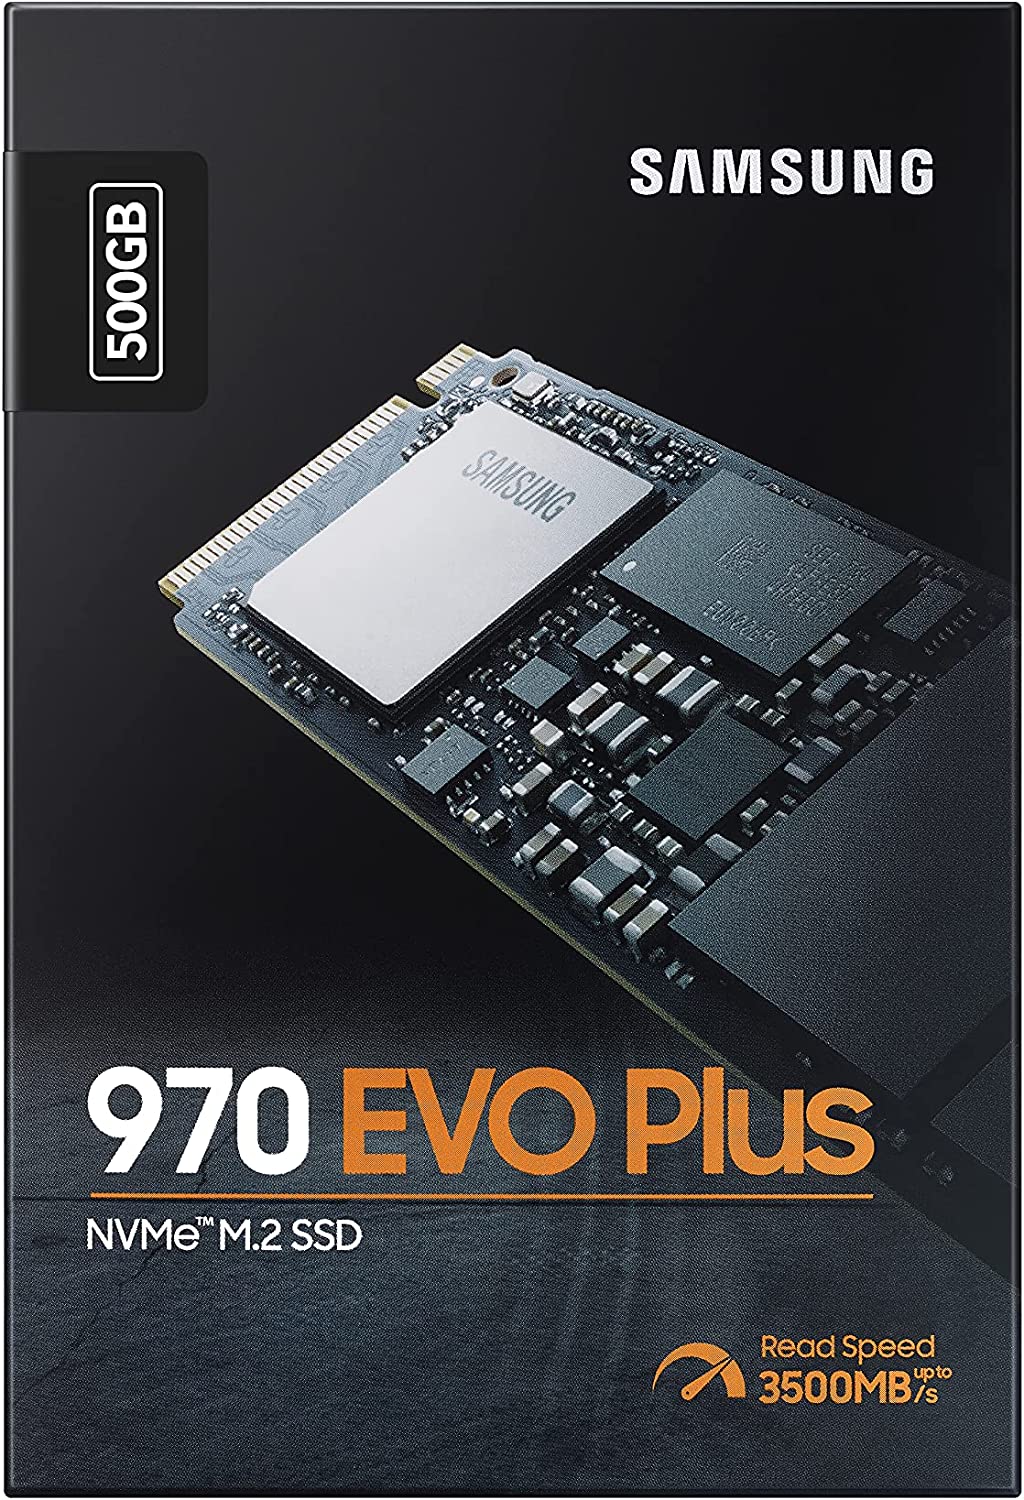 Nikke ved godt Tegn et billede SAMSUNG 970 EVO Plus NVMe® M.2 SSD 500GB – Flash Tech